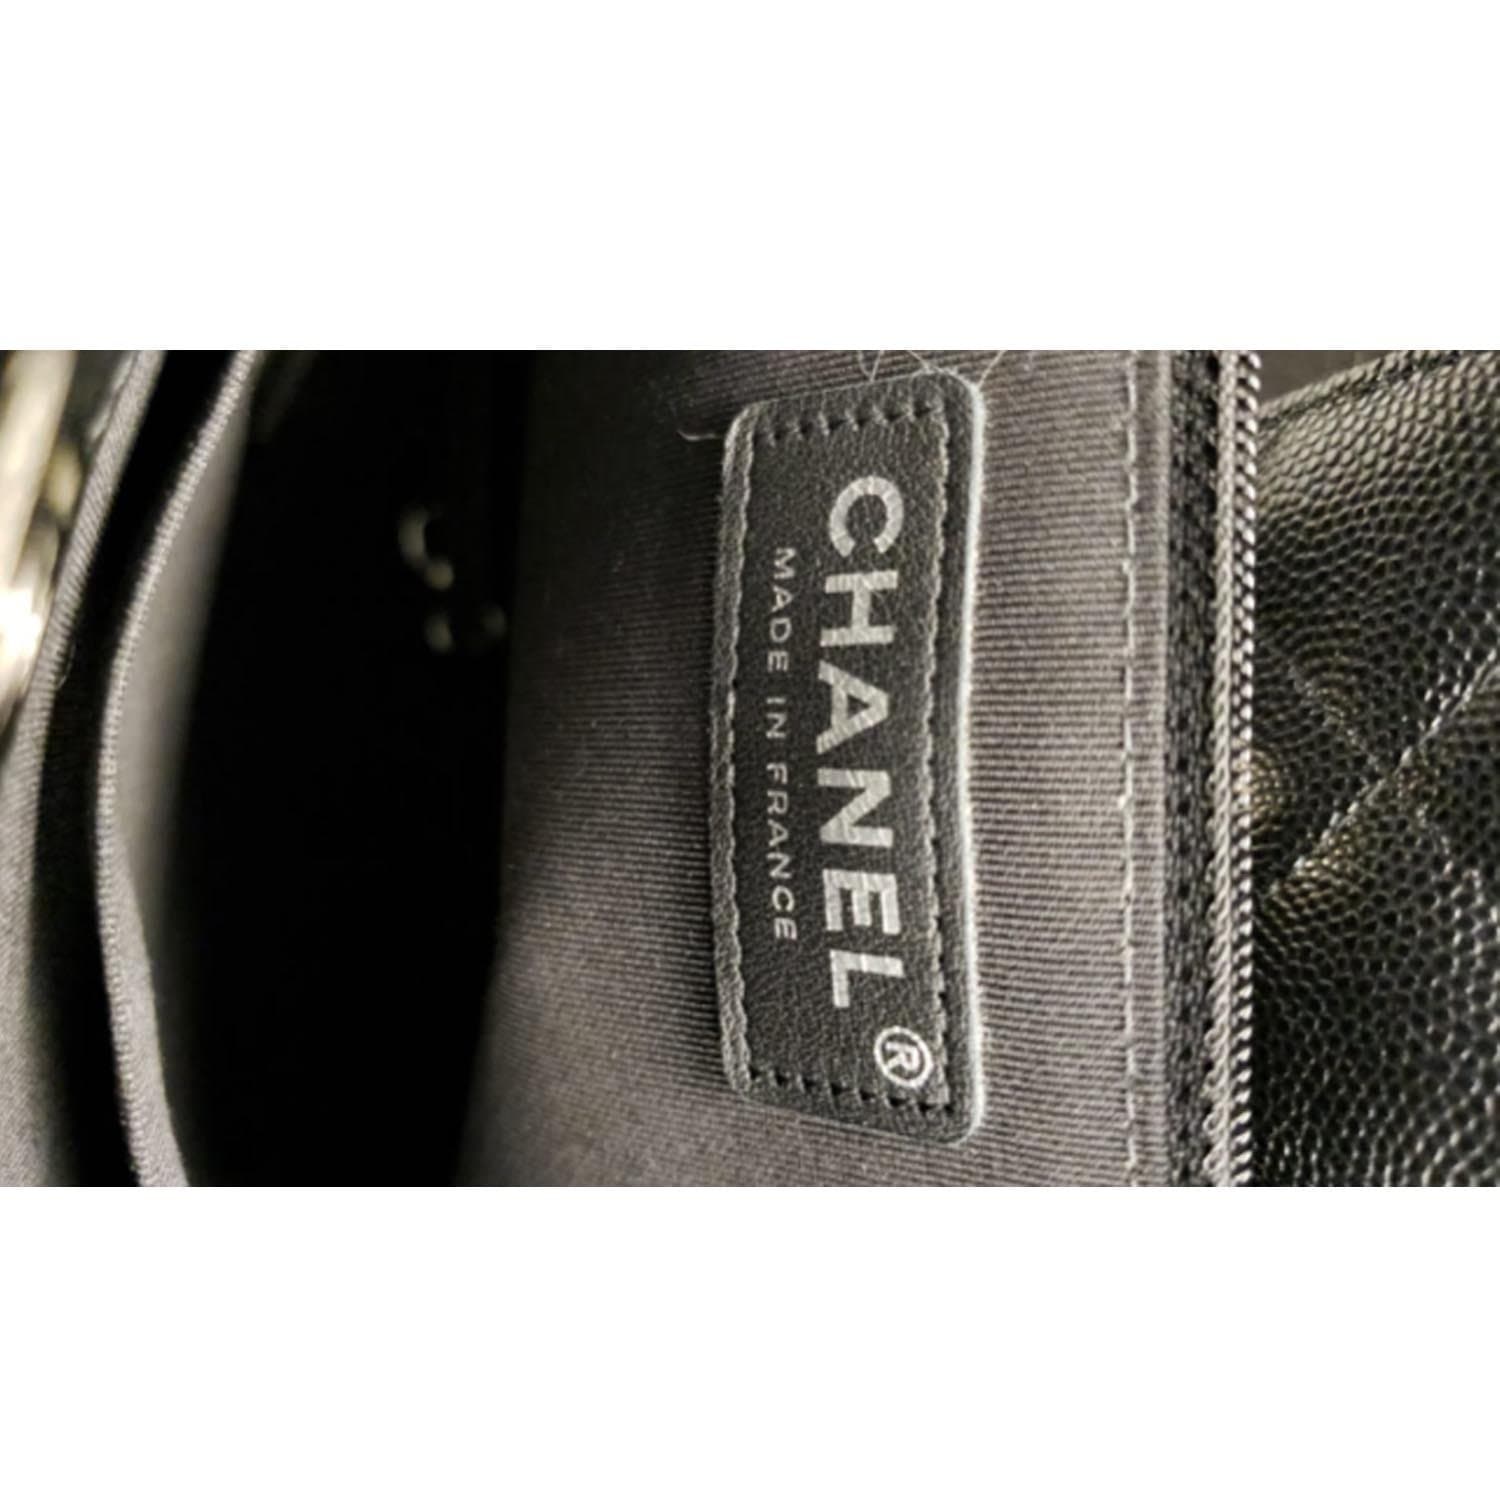 Chanel Black Lambskin 3 CC Tote Large Q6B12B1IK5000